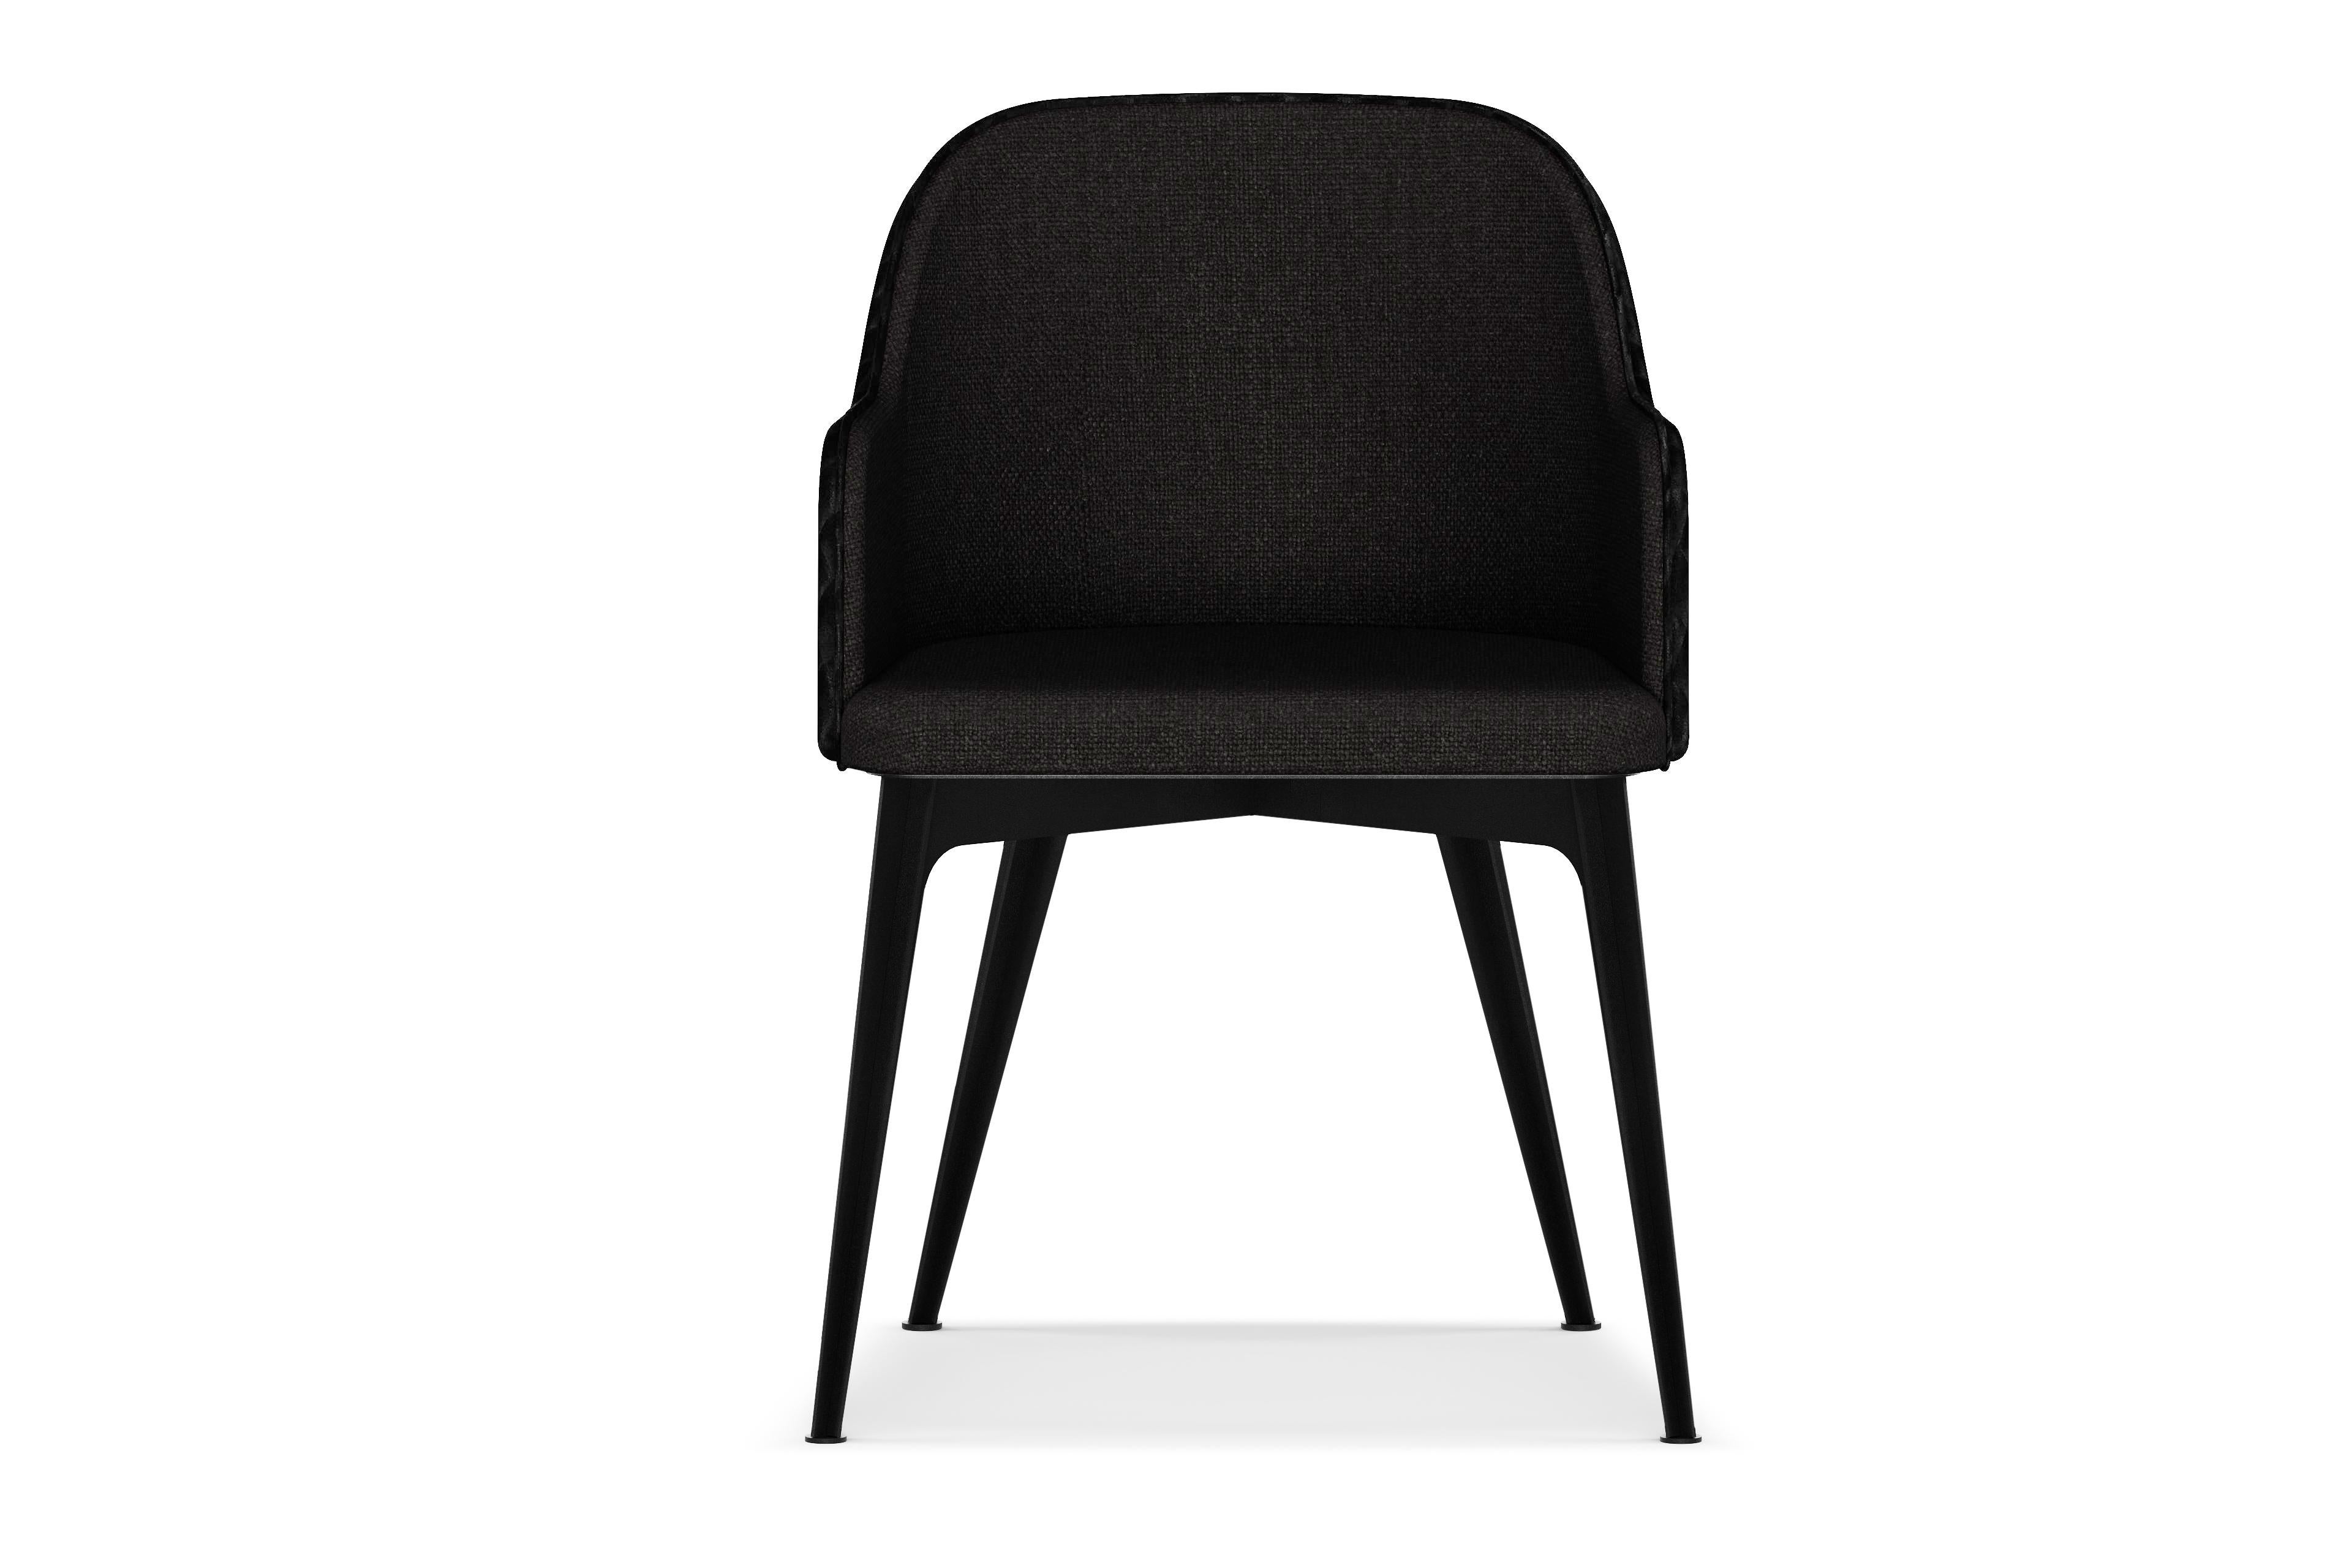 Ein komfortabler, kompakter Stuhl, der für eine lange Lebensdauer konzipiert und hergestellt wurde.

M A T E R I A L S

+ Sitz, Rücken und Armlehne aus Sperrholz

+ Hochdichter Schaumstoff

+ FibreGuard™ Polstermaterialien
   (Auswahl an Farben und